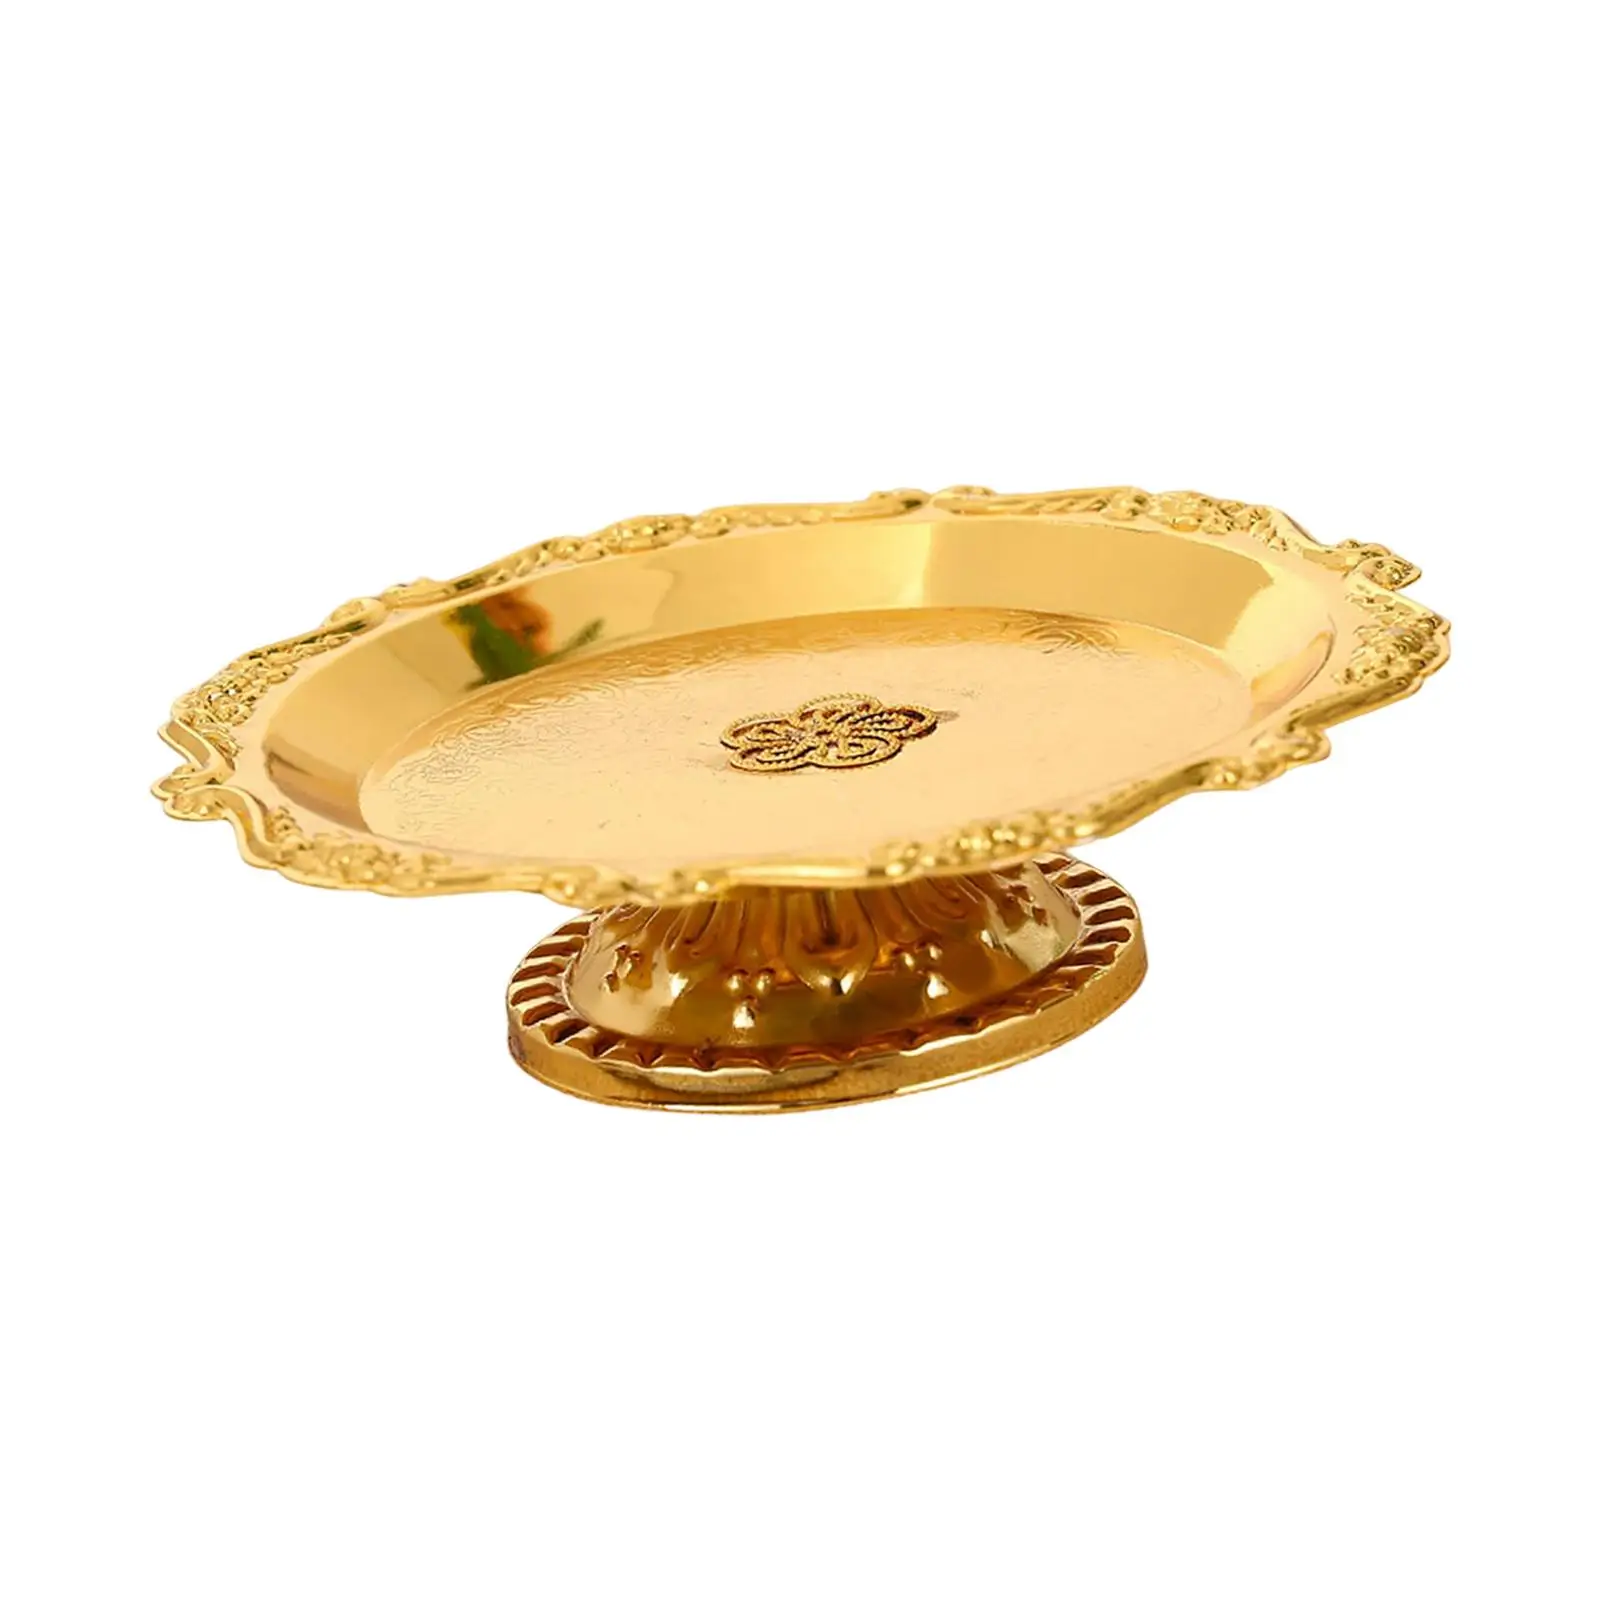 Gold Pedestal Bowl Candy Storage Basket Table Centerpiece Desktop Tray Cupcake Holder for Festivals Decoration